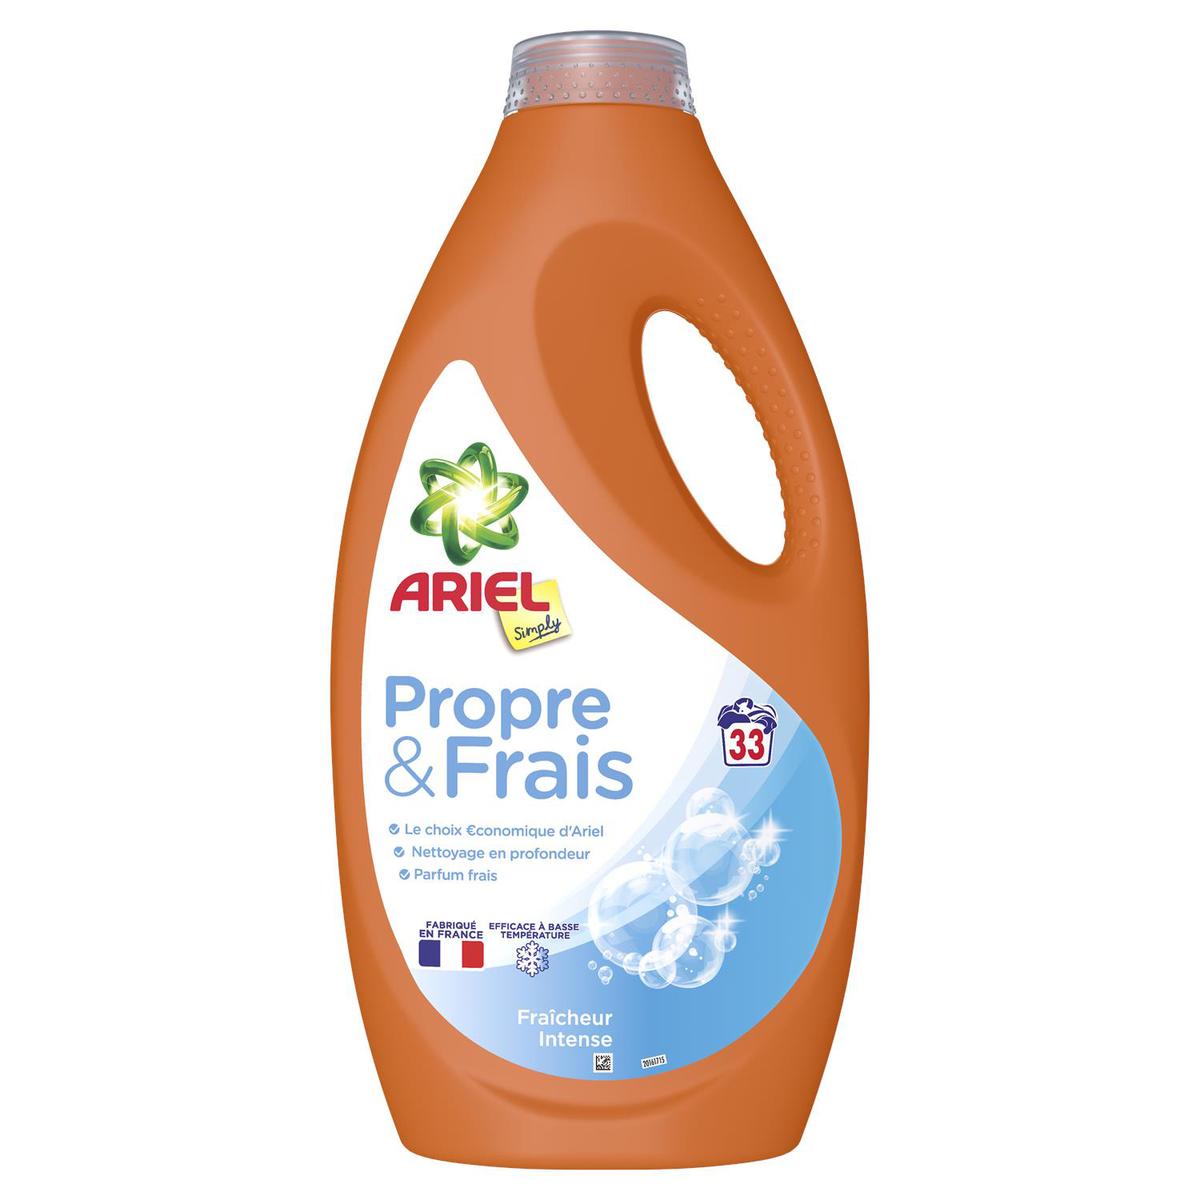 Ariel - Professionnel - Lessive Liquide - Couleur - 100 lavages - 5 litres